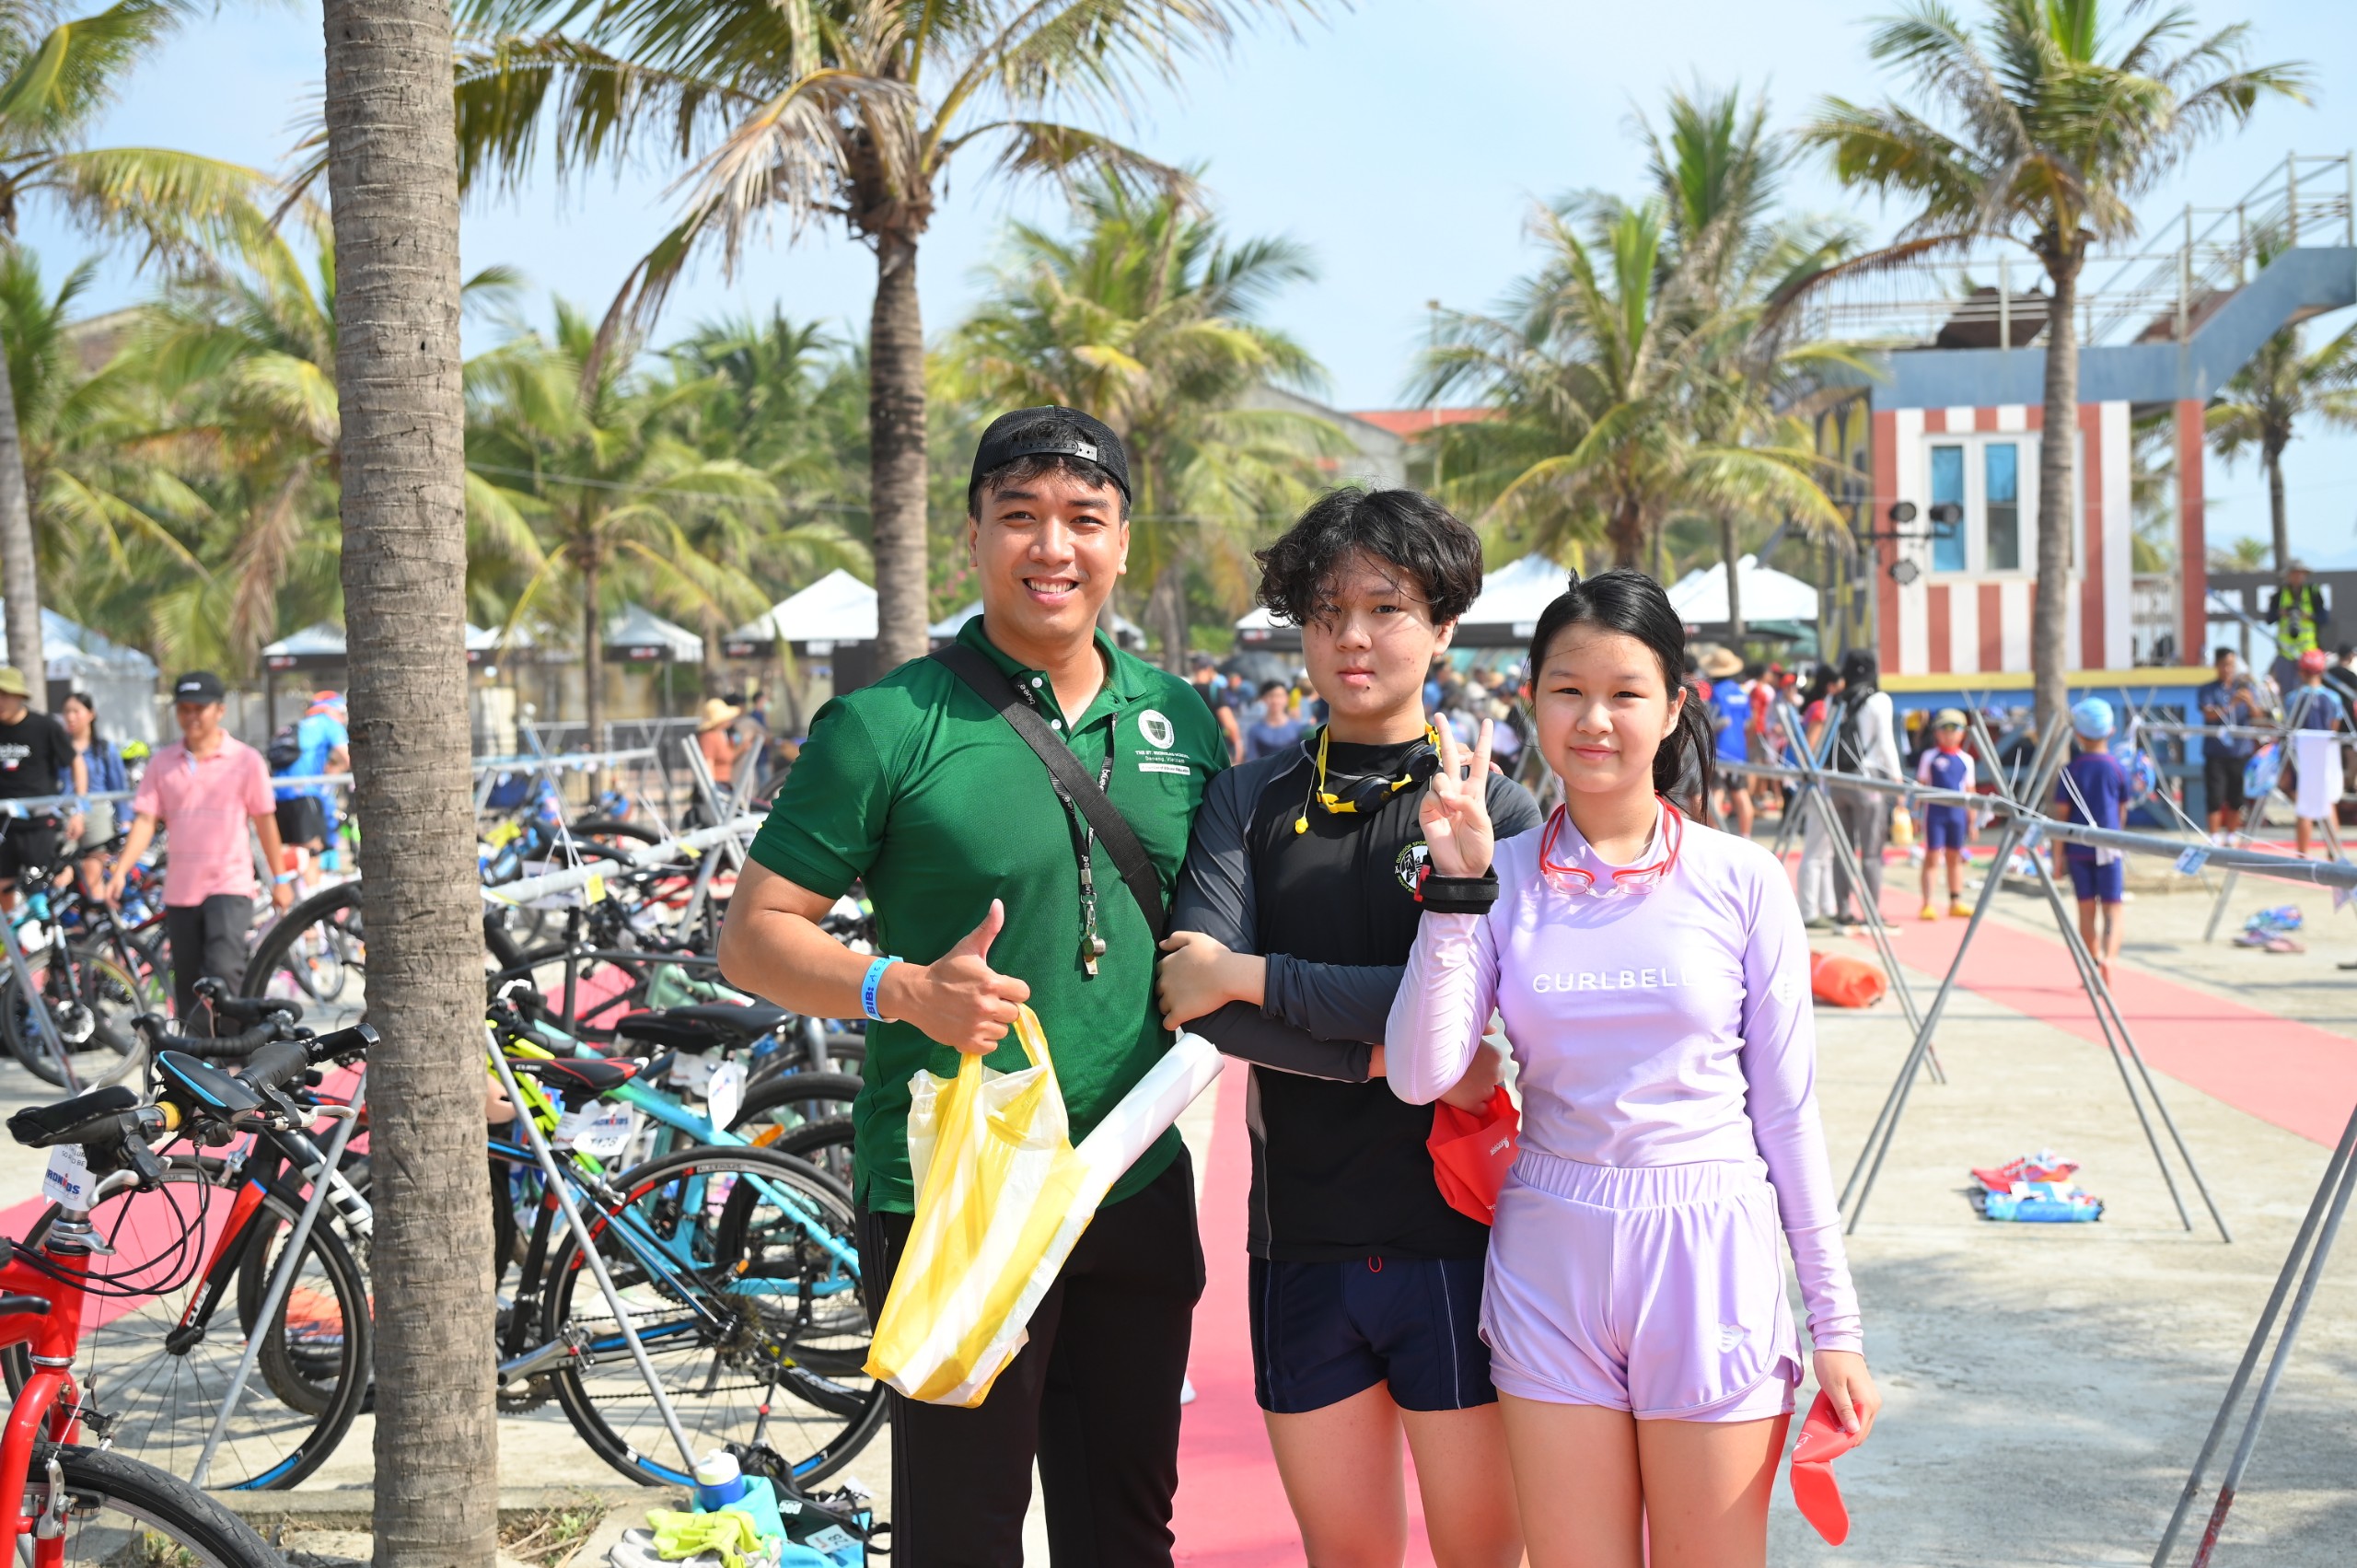 Hậu trường - Gần 500 vận động viên nhí tham gia cuộc thi 3 môn phối hợp ở Đà Nẵng (Hình 9).